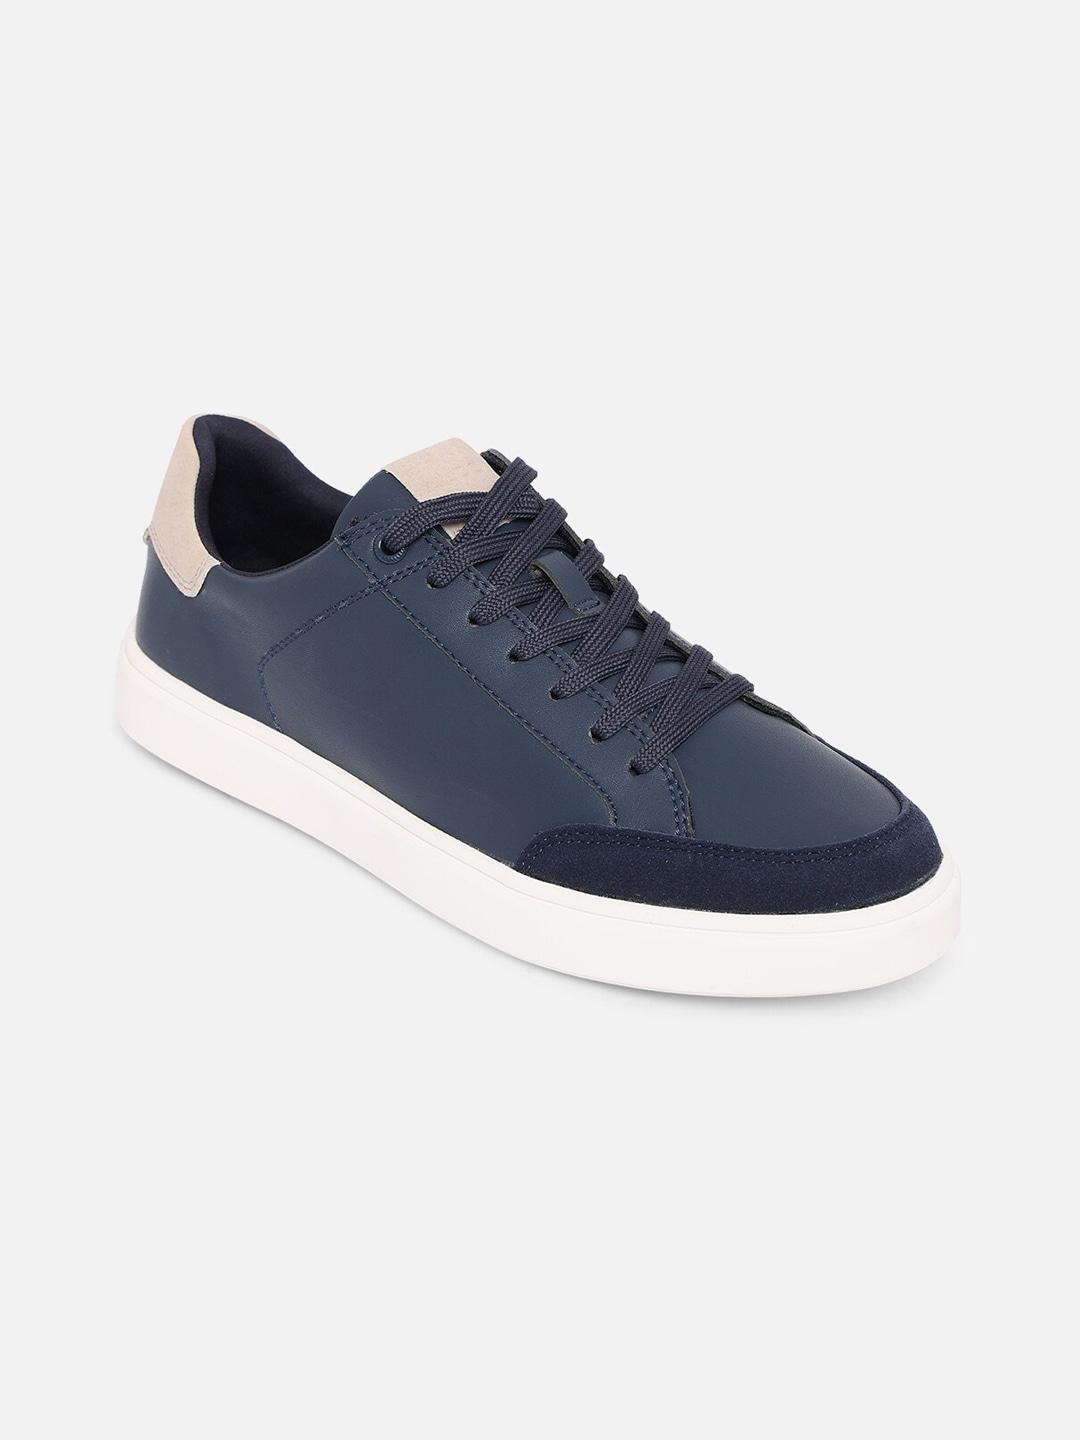 ALDO Men Navy Blue Sneakers